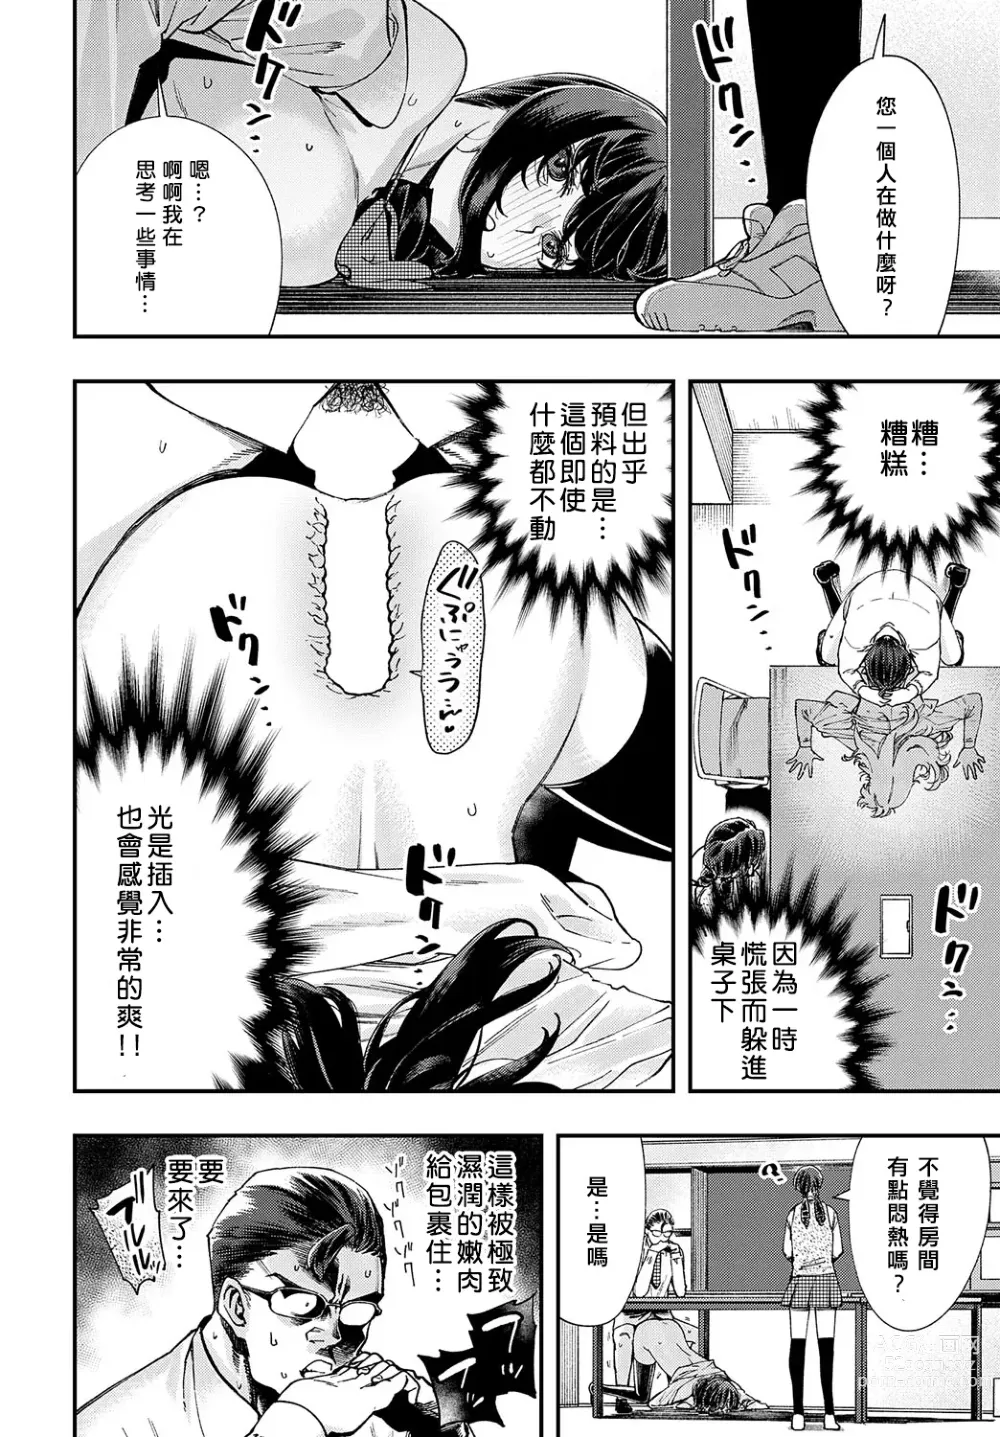 Page 20 of manga Majime wa Yattemo Naoranai Ch. 1